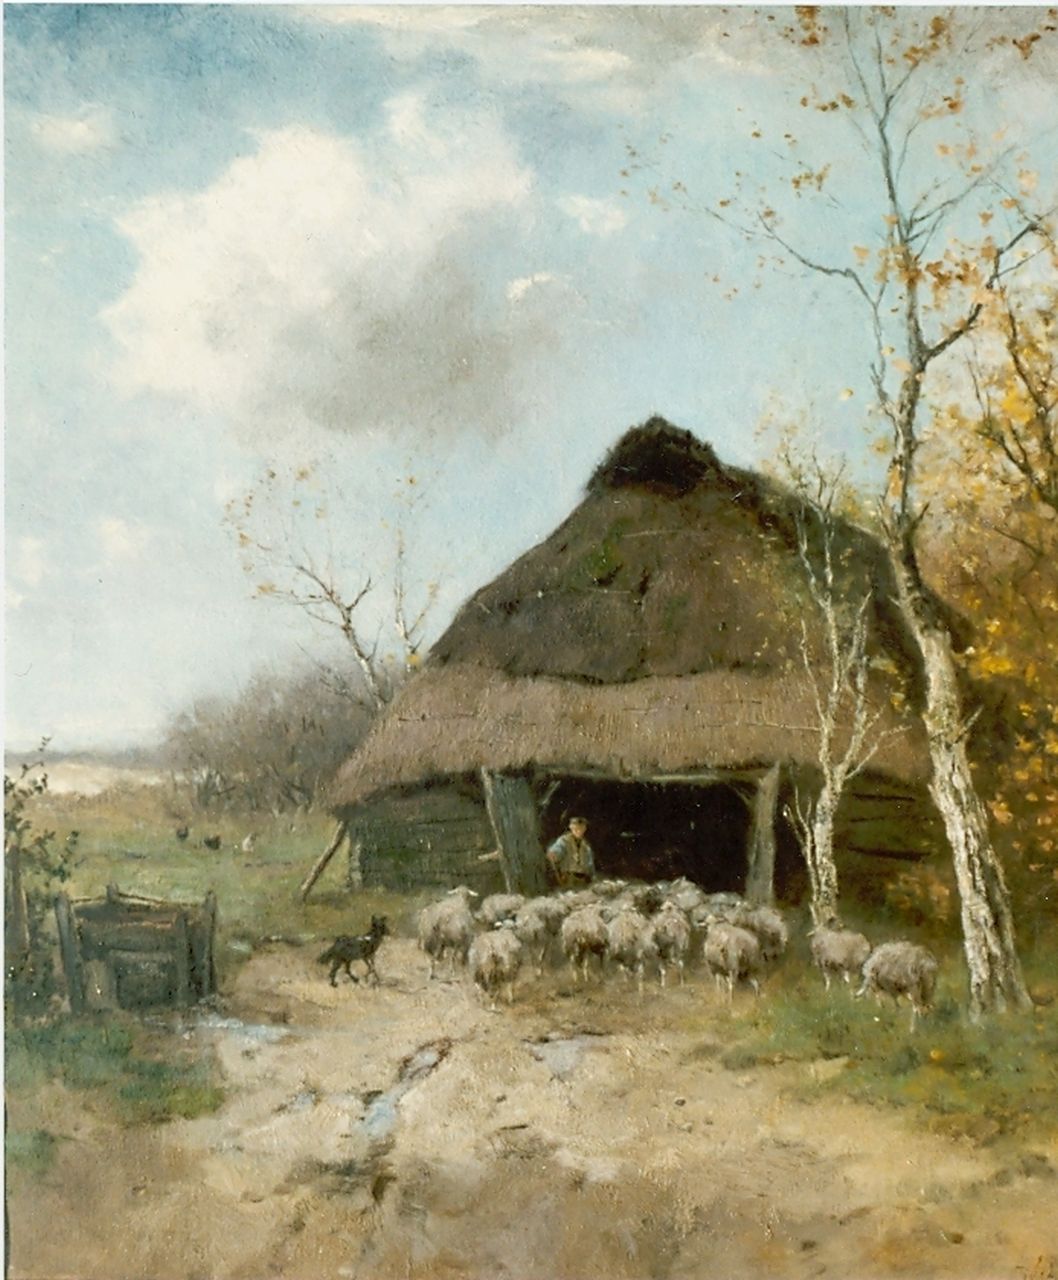 Scherrewitz J.F.C.  | Johan Frederik Cornelis Scherrewitz, Entering the sheepfold, Öl auf Leinwand 60,3 x 55,5 cm, signed l.r.